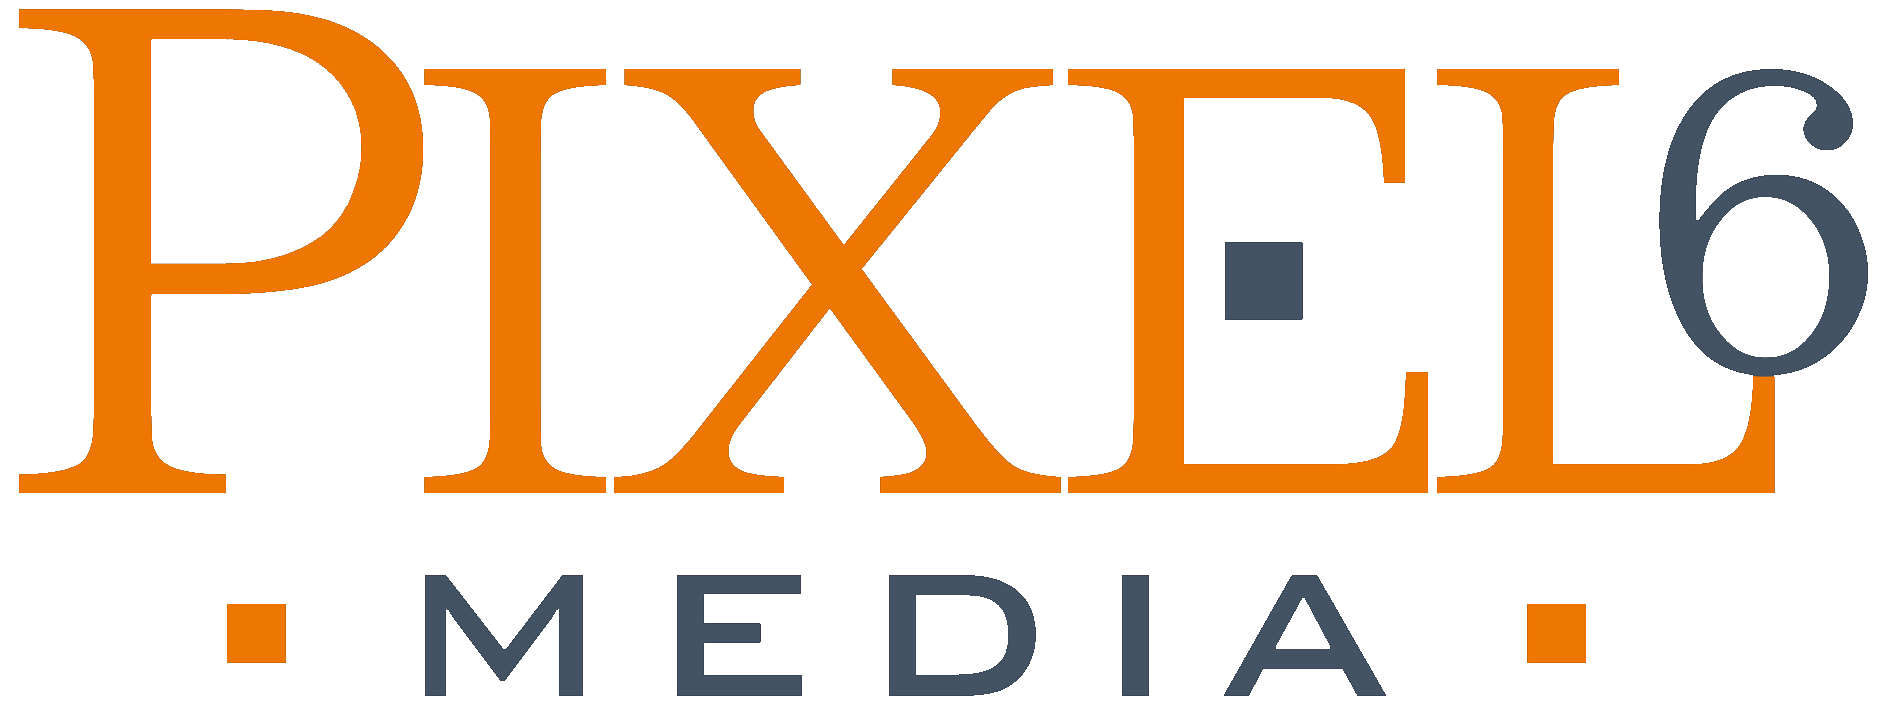 Pixel 6 Media